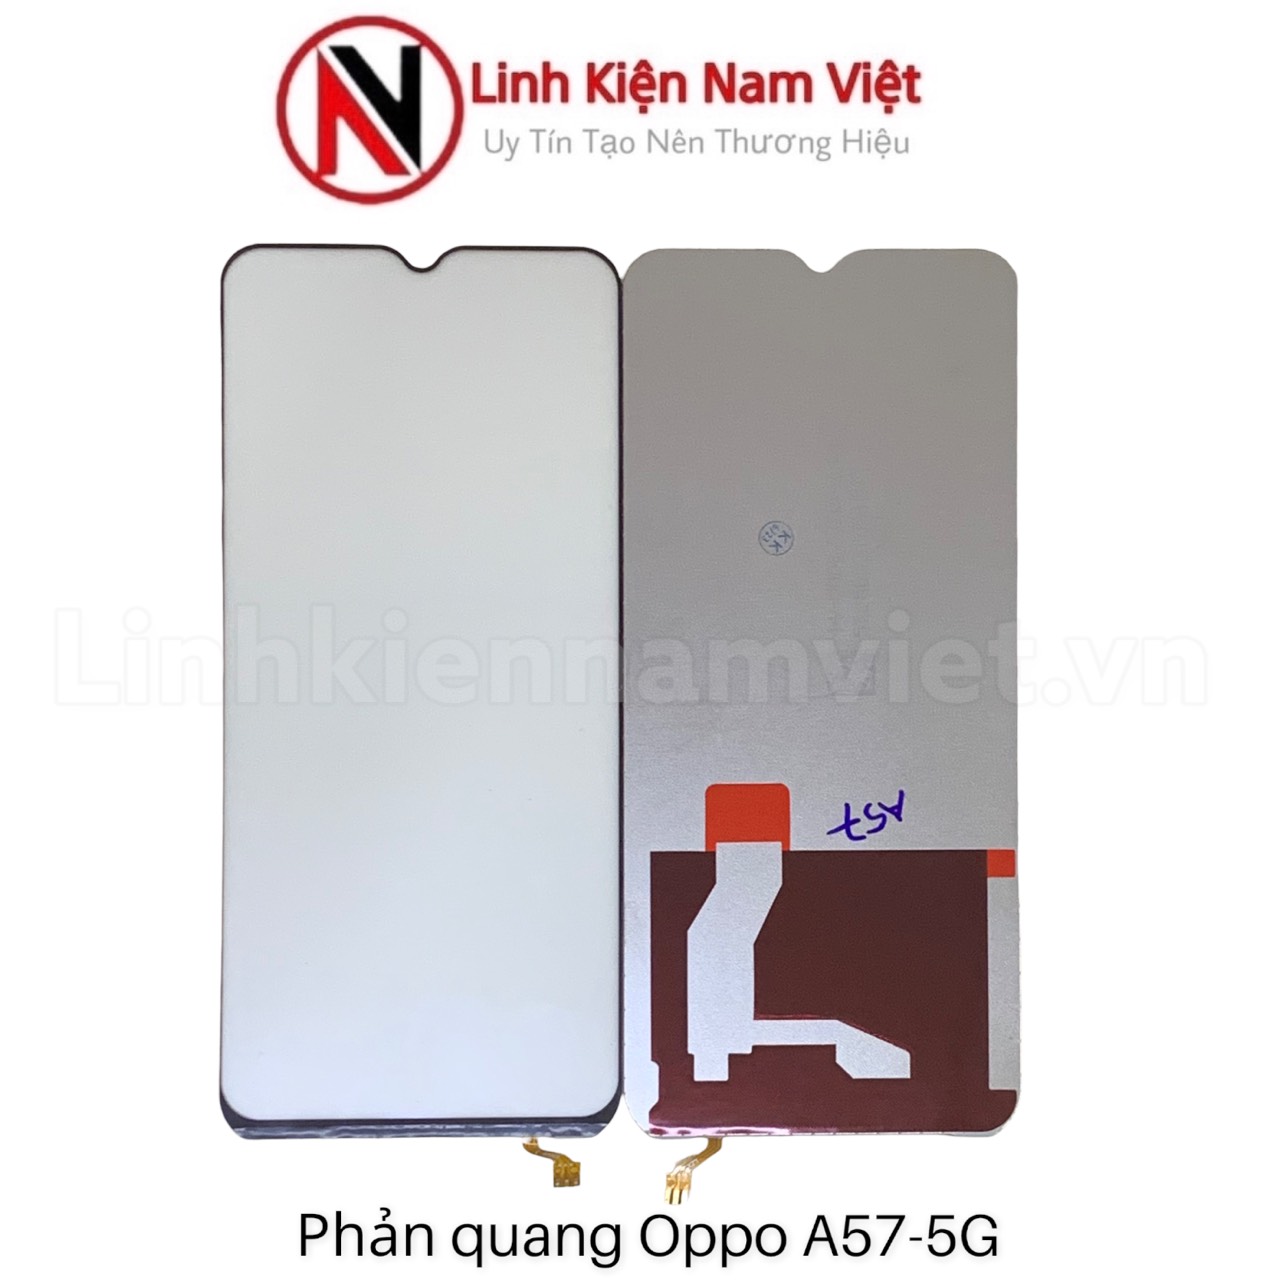 Cung cấp Phản Quang Oppo A57 - 5G